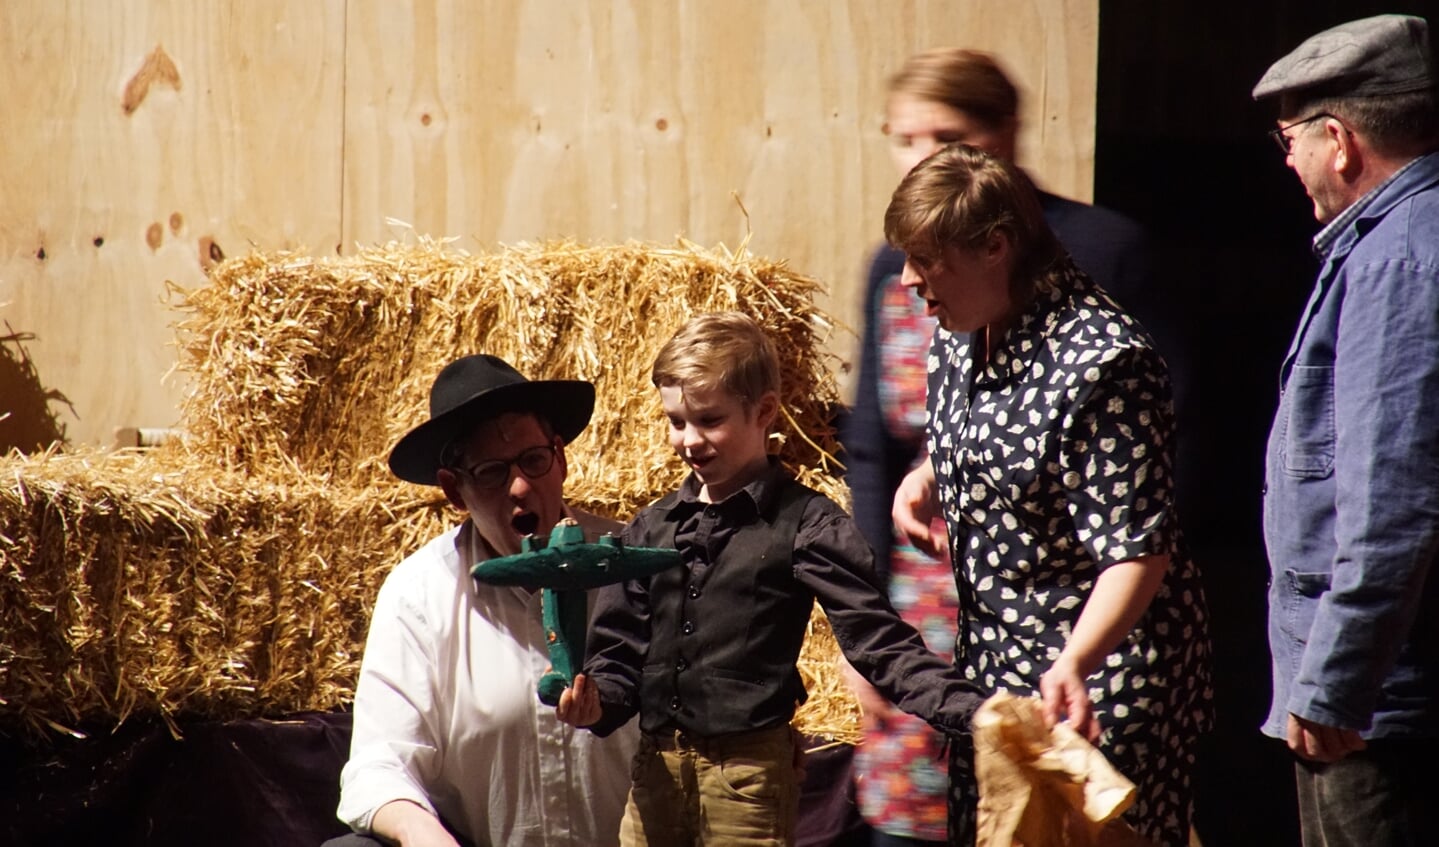 De achtjarige Jesse speelt de rol van de jonge onderduiker Joop Levy, die een houten vliegtuigje krijgt op zijn verjaardag. Foto: Frank Vinkenvleugel